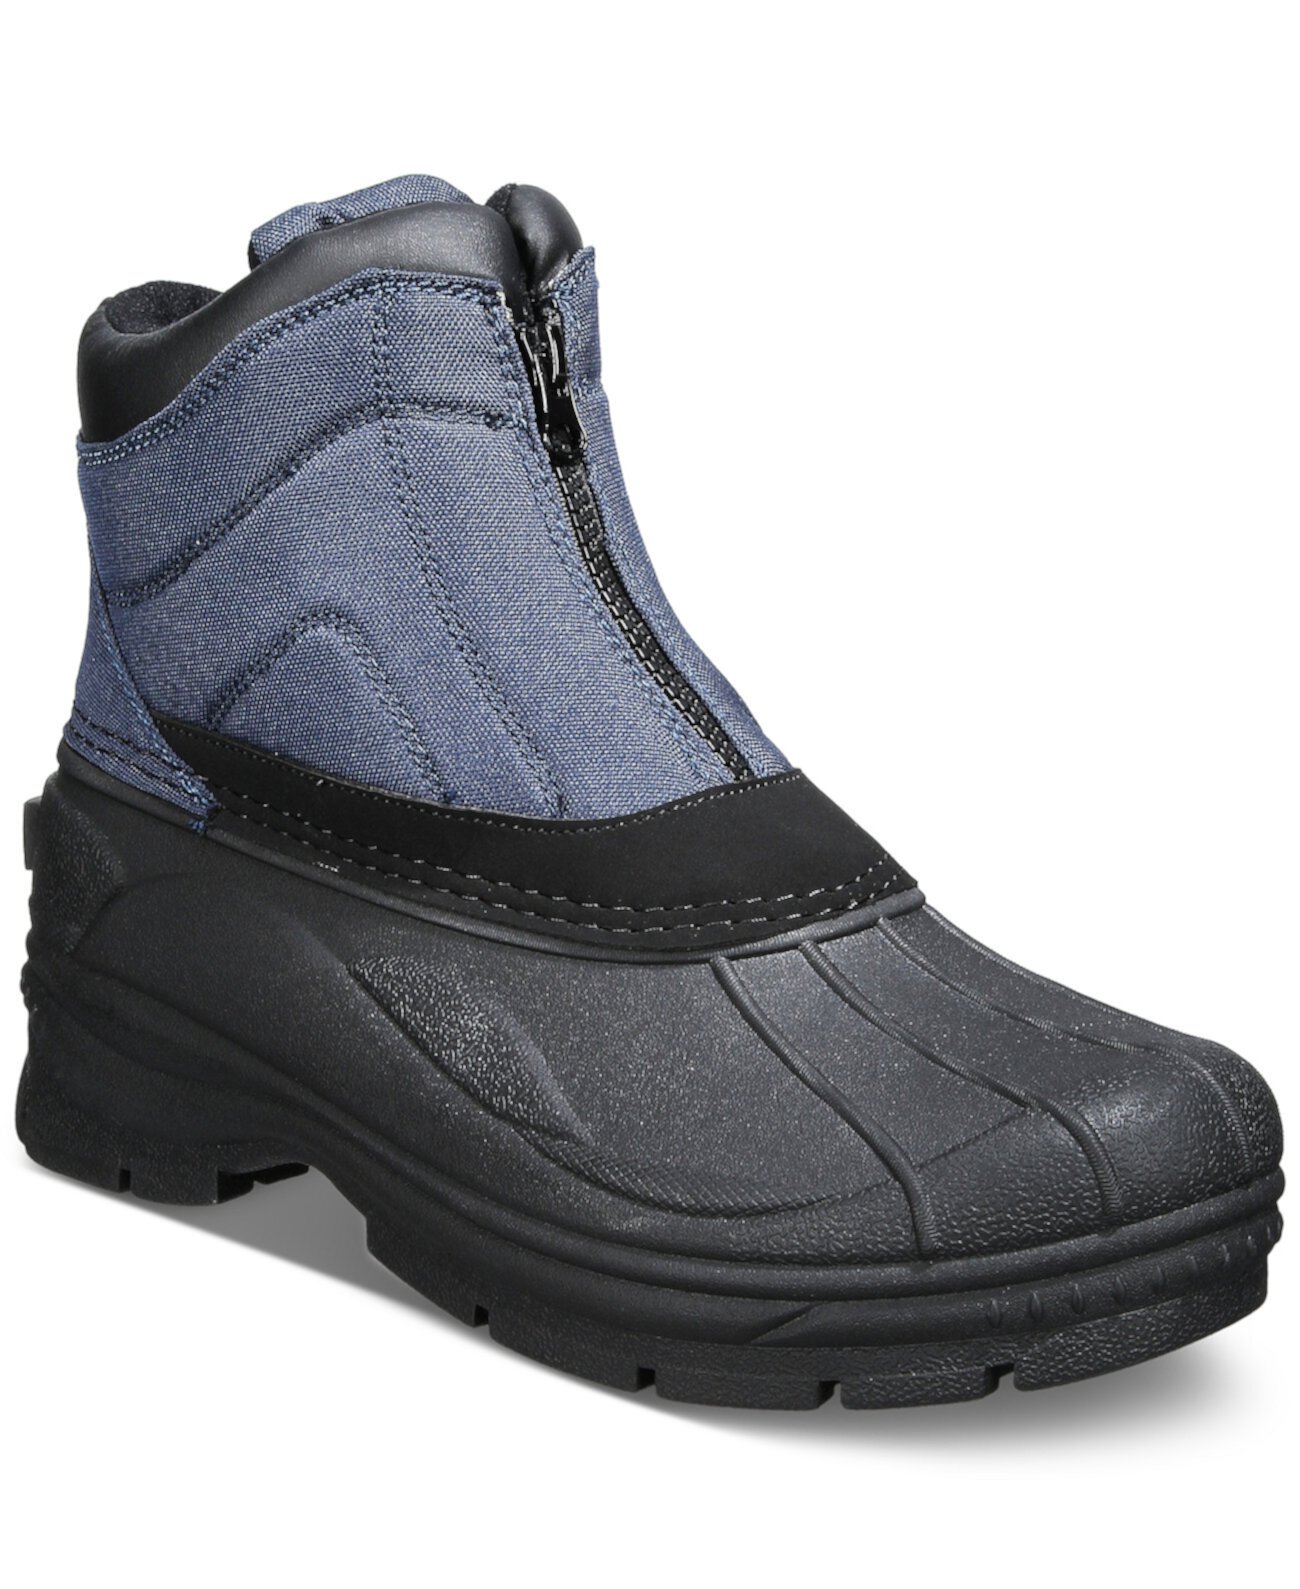 Мужские походные ботинки Jessie с молнией спереди для холодной погоды Weatherproof Vintage